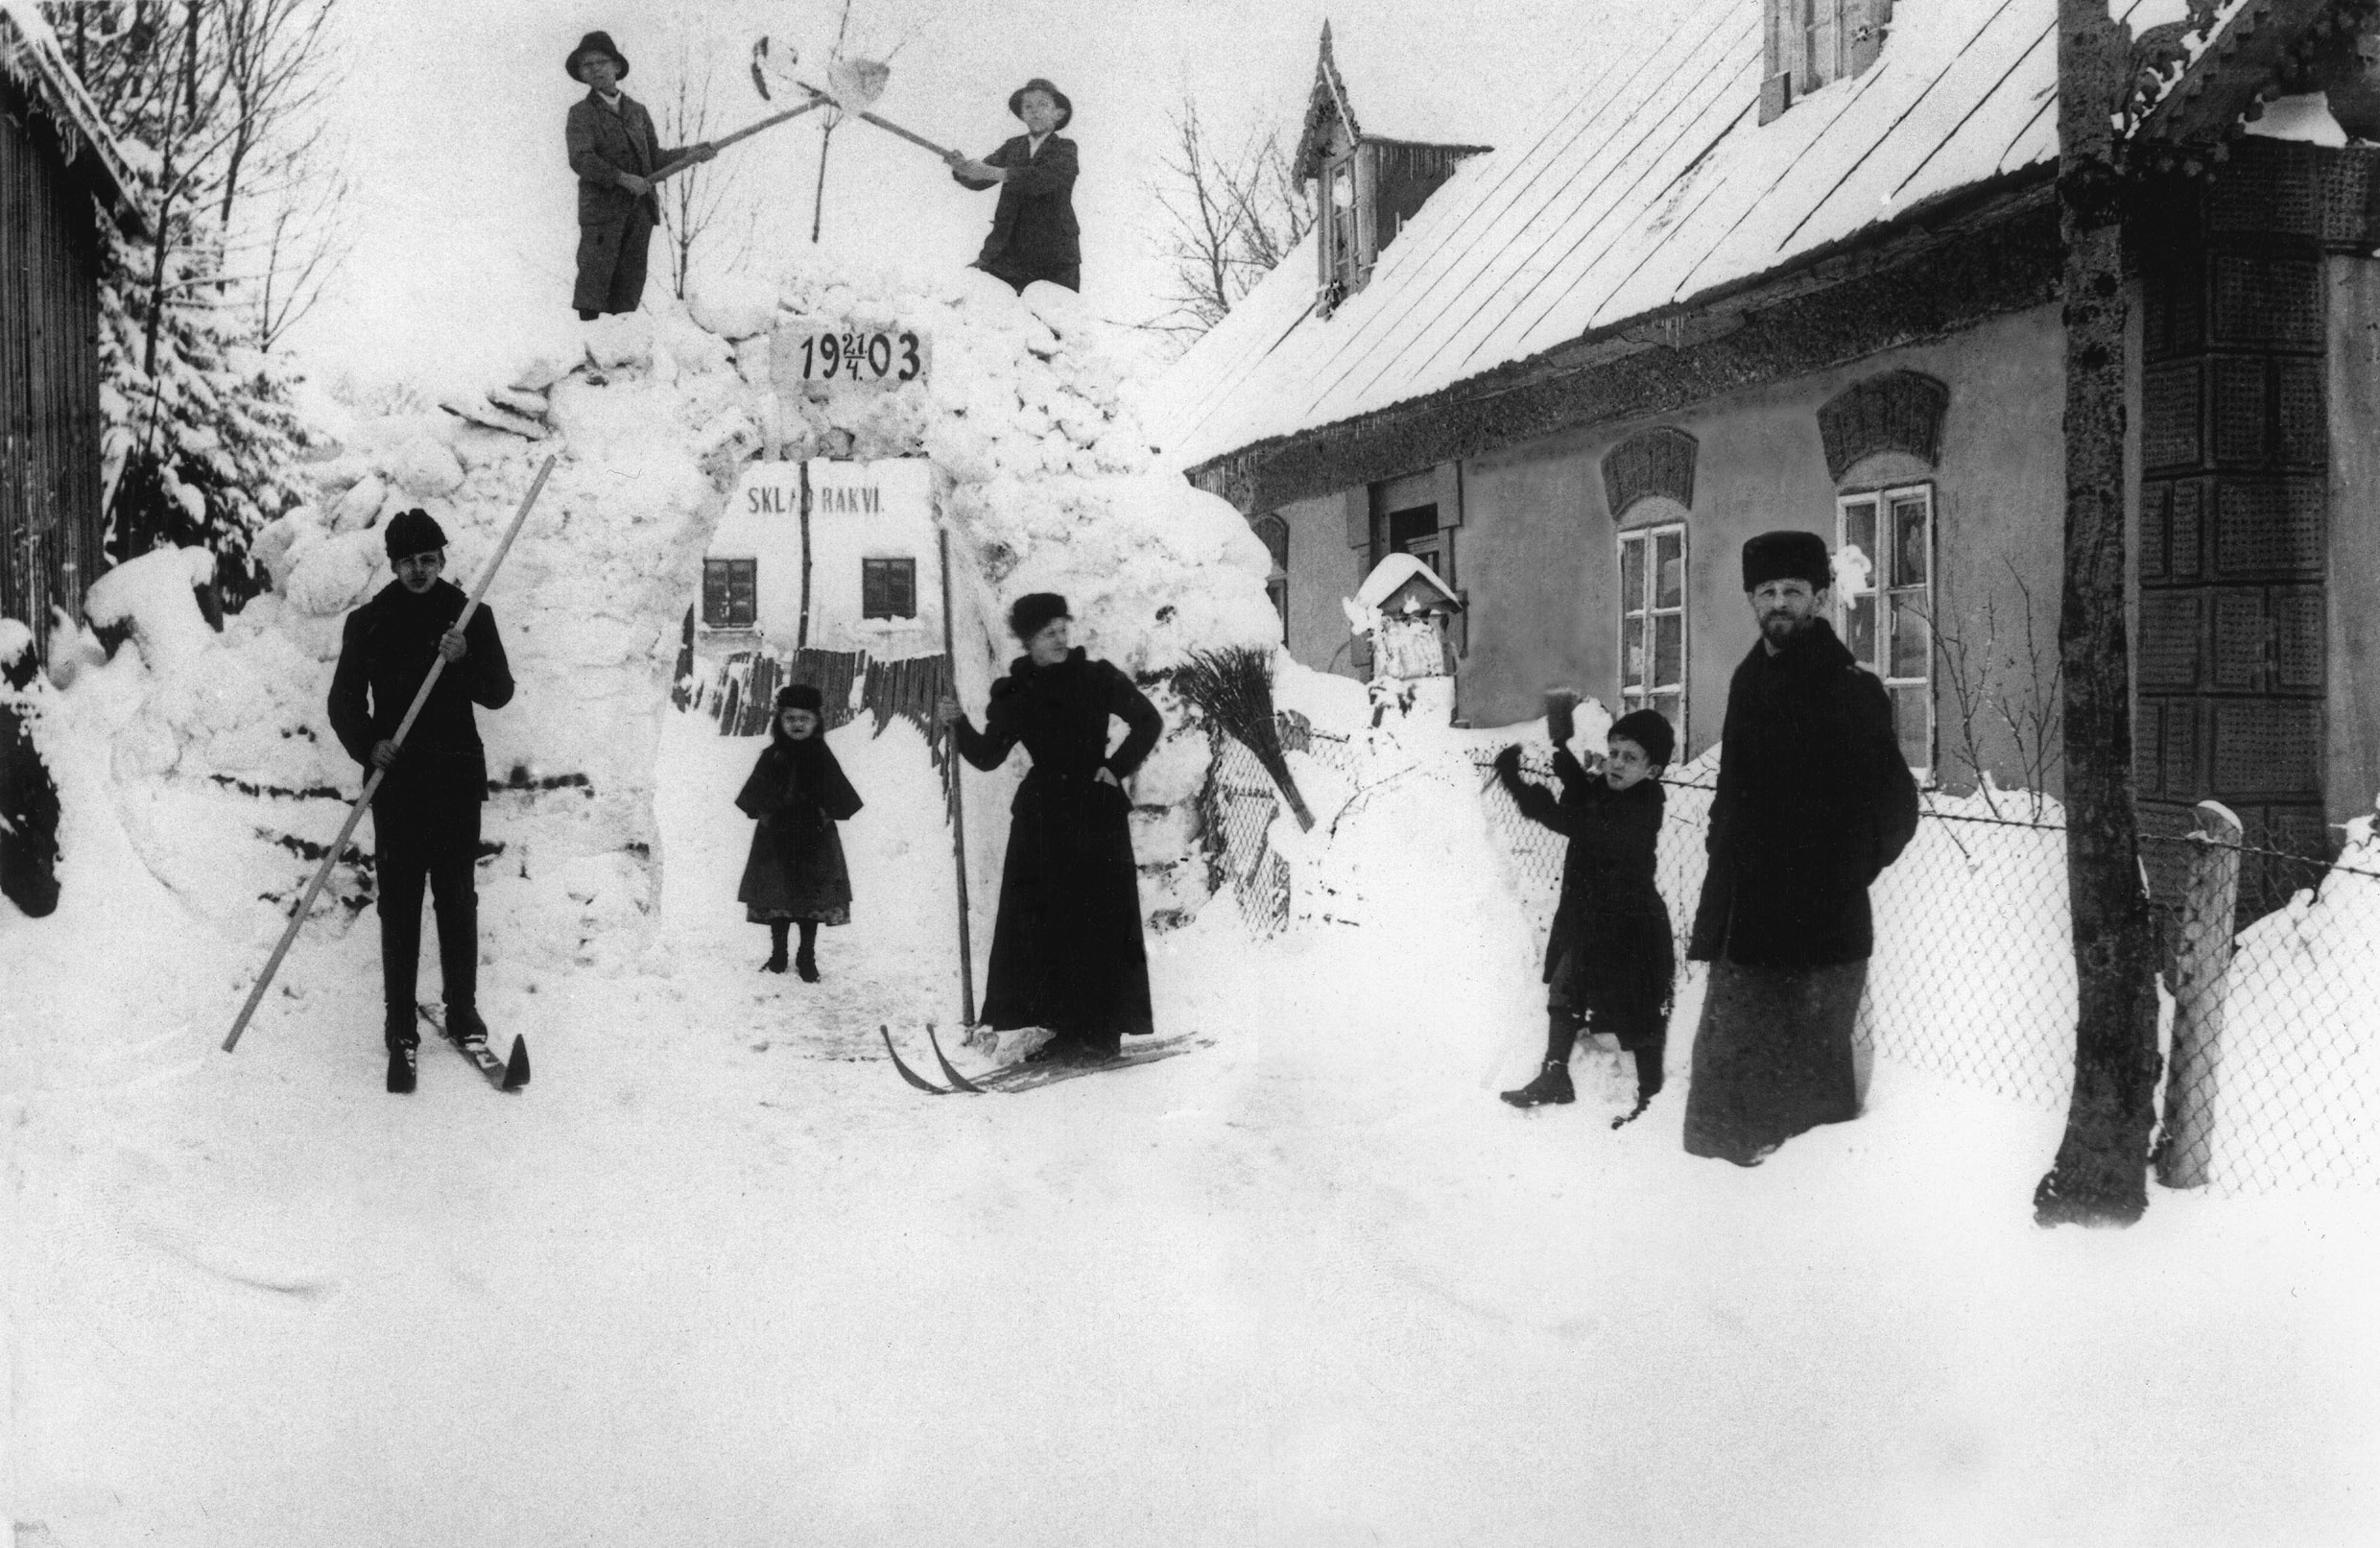 Sněhová nadílka ve Vysokém nad Jizerou, rok 1903